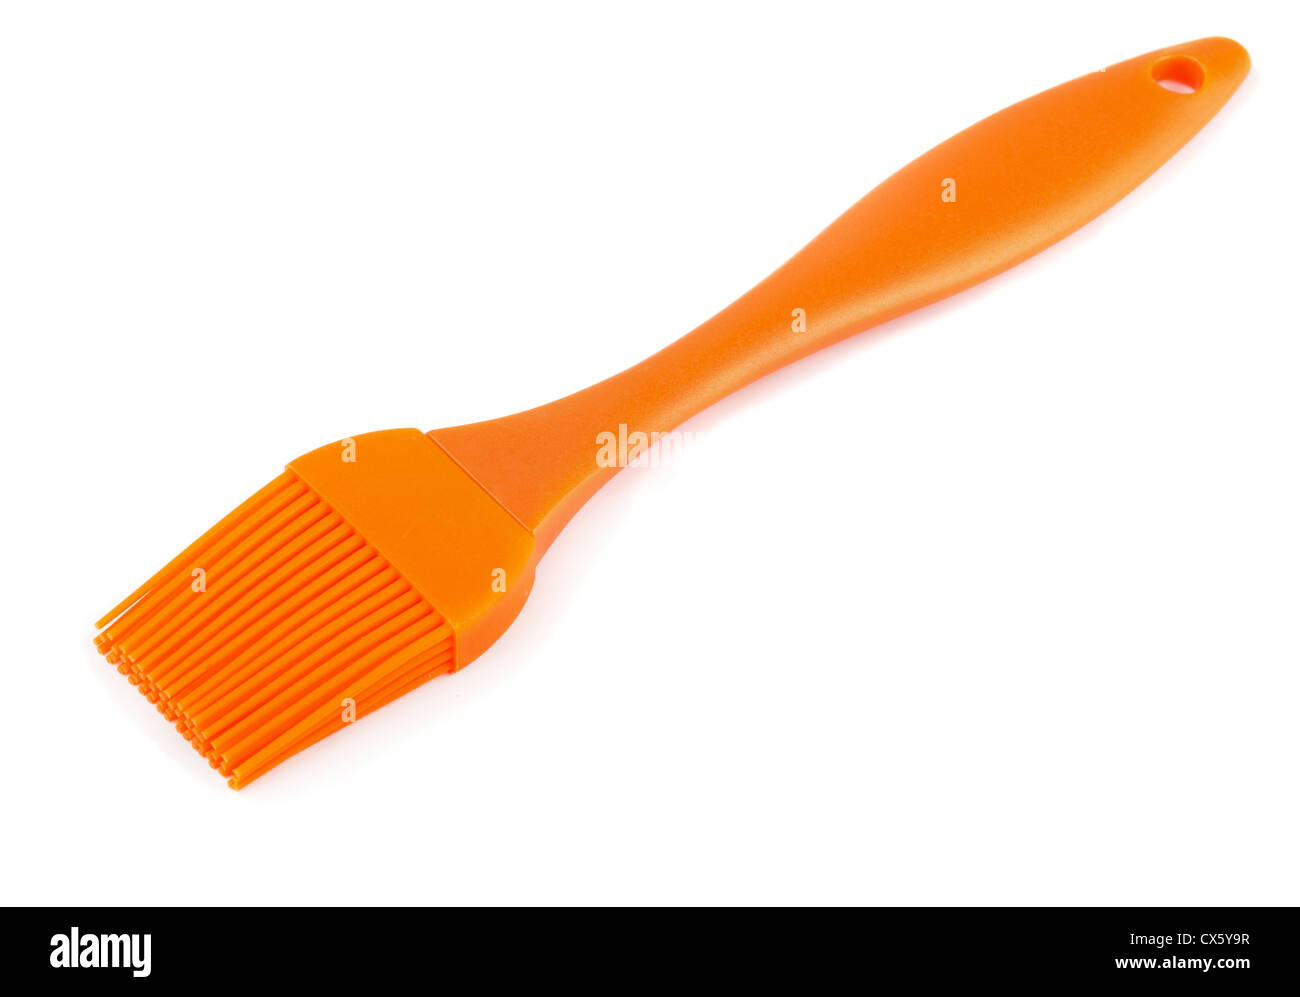 Orange silicone pastry brush isolated on white Stock Photo